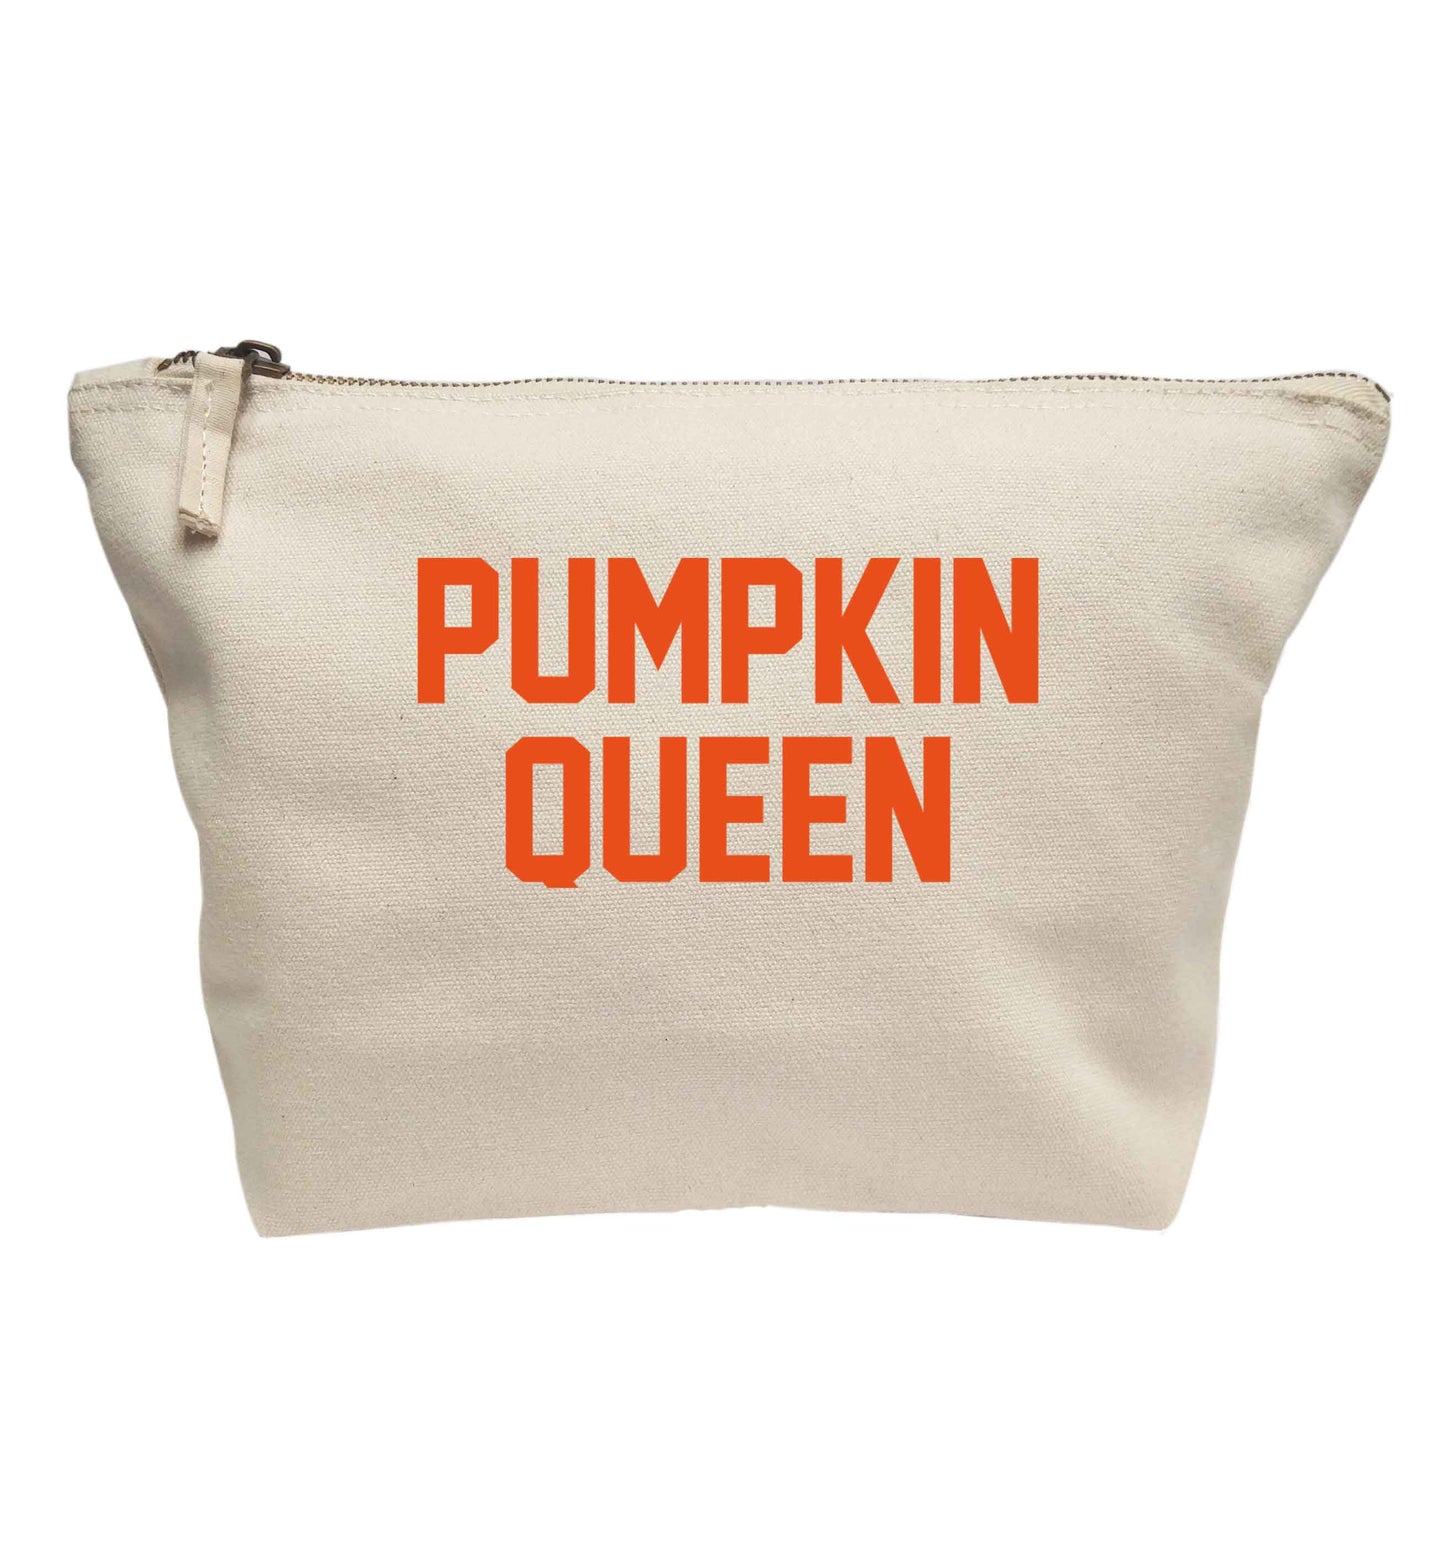 Pumpkin Queen | Makeup / wash bag